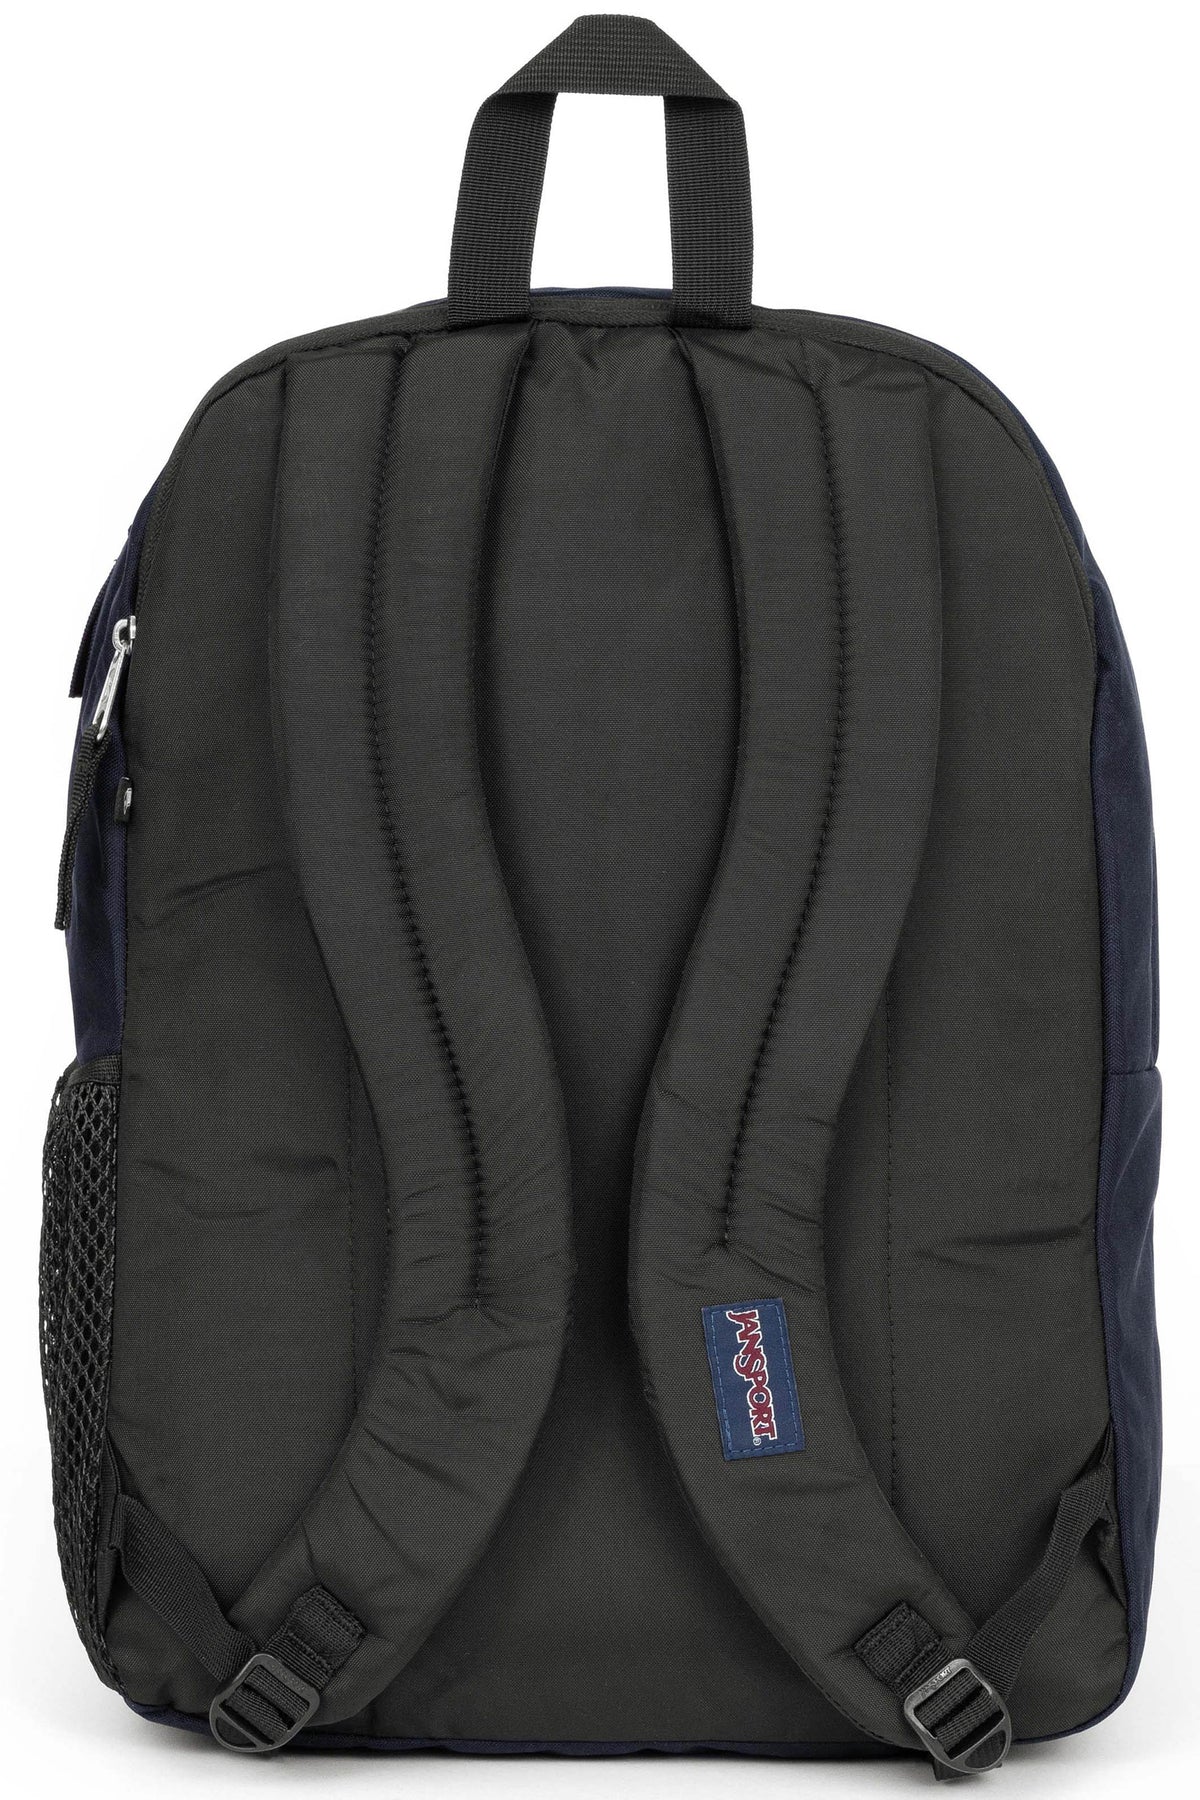 Jansport Big Student Backpack - Navy